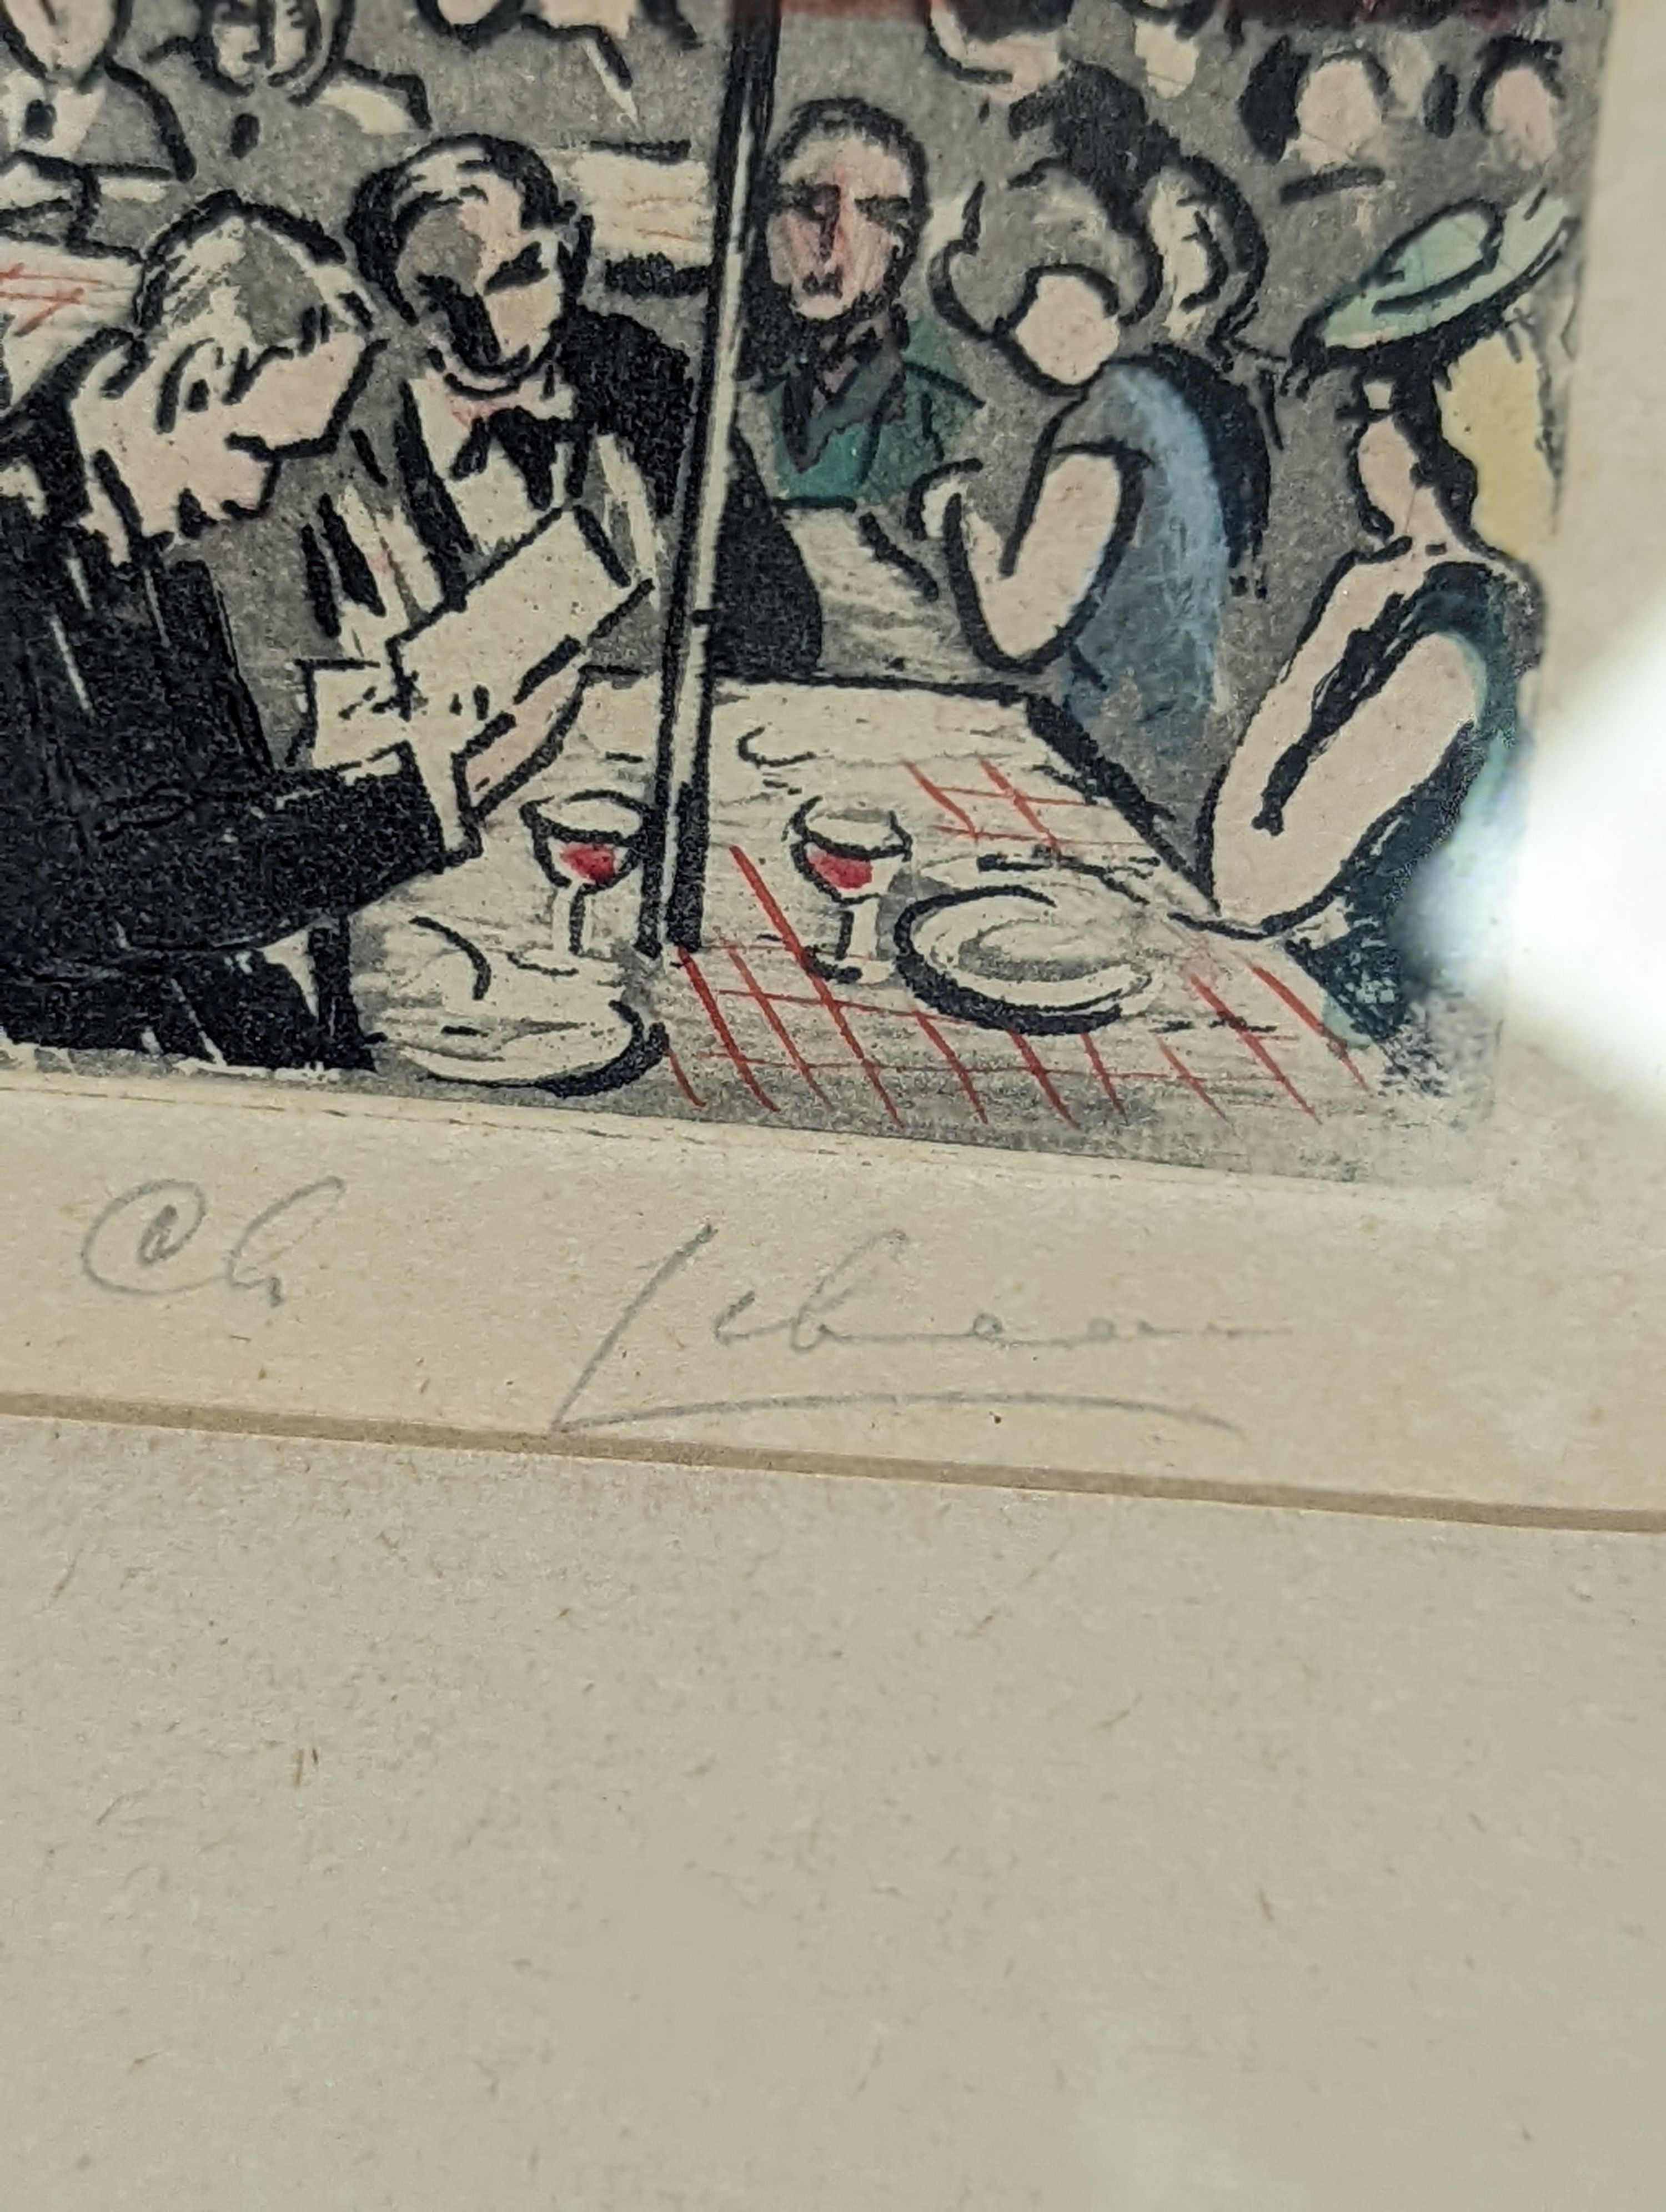 Chris Lebeau (1878-1945), etching, ‘La Place Du Tertre! Montmatre’, early / mid 20th century, signed, 14 x 21.5cm